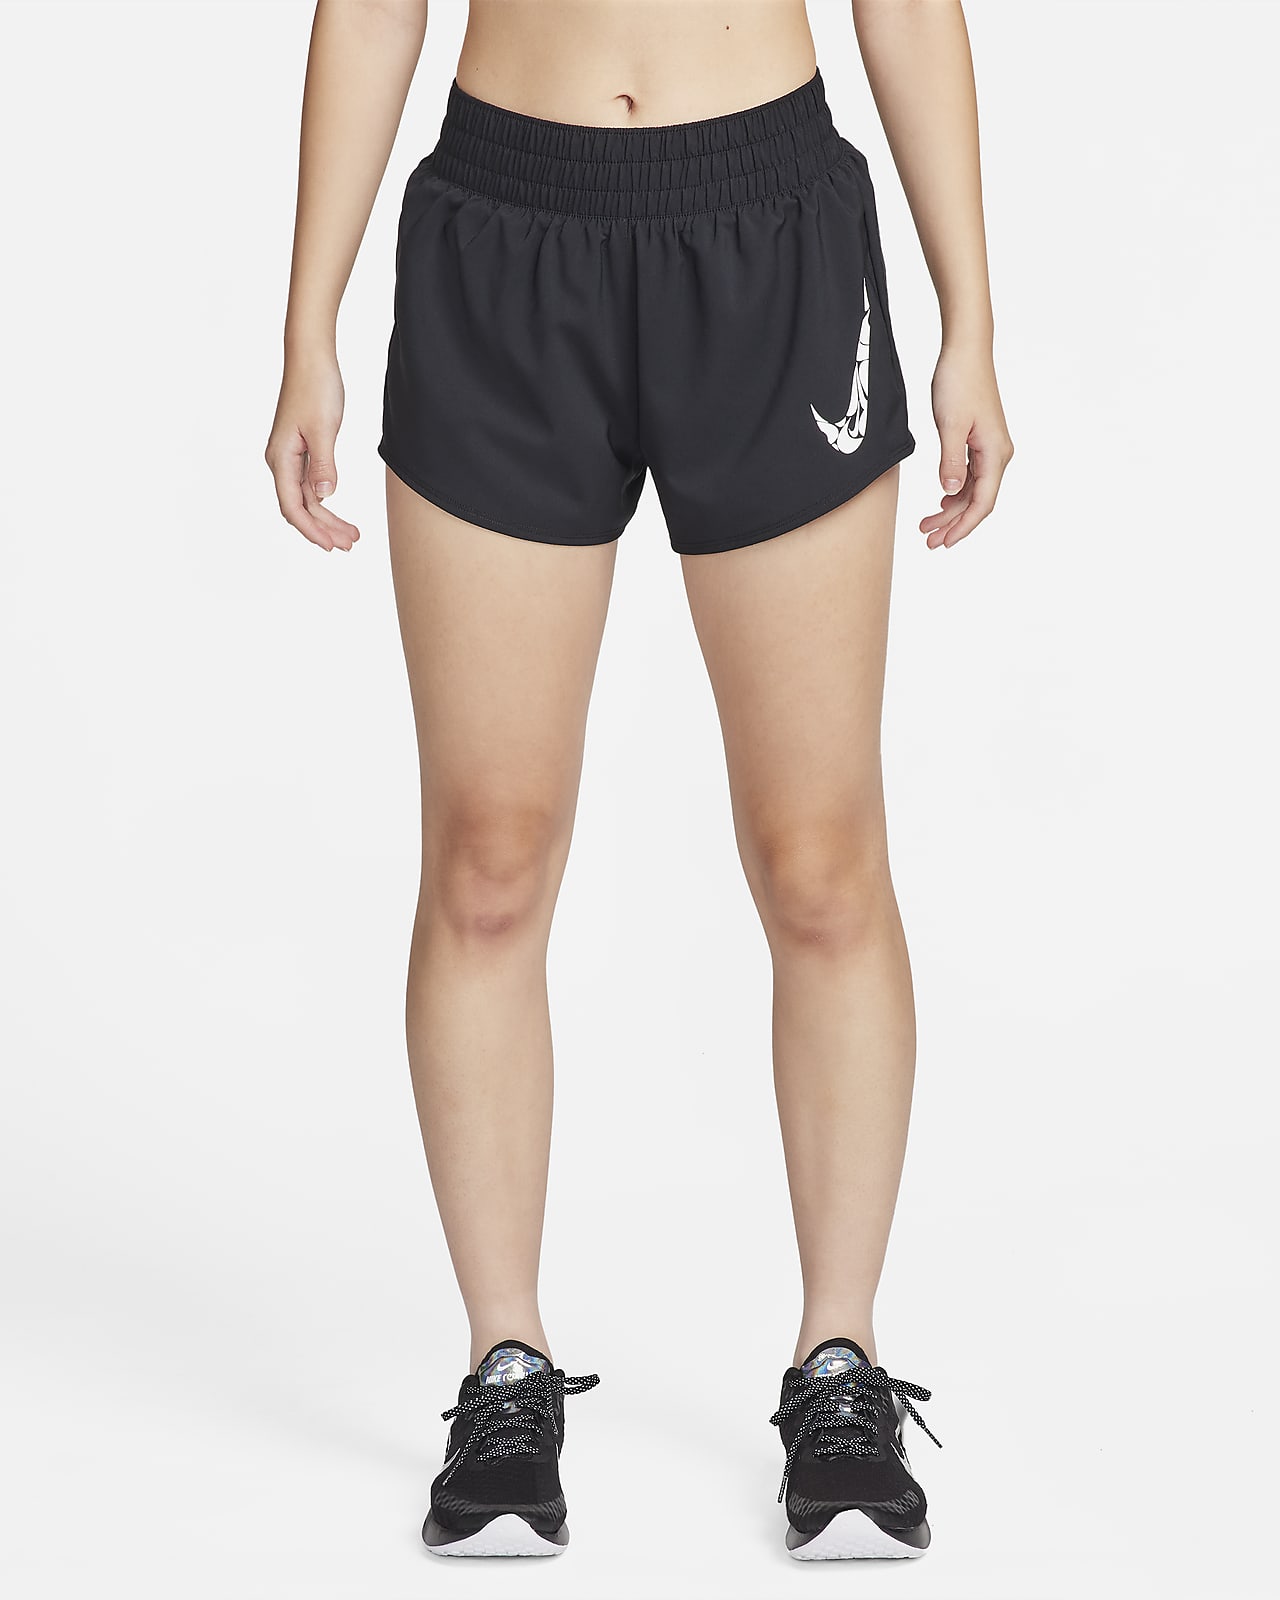 NIKE Dri-fit Boys'/girls' Running Training Short Shorts. Label Size: XL.  Black -  Canada